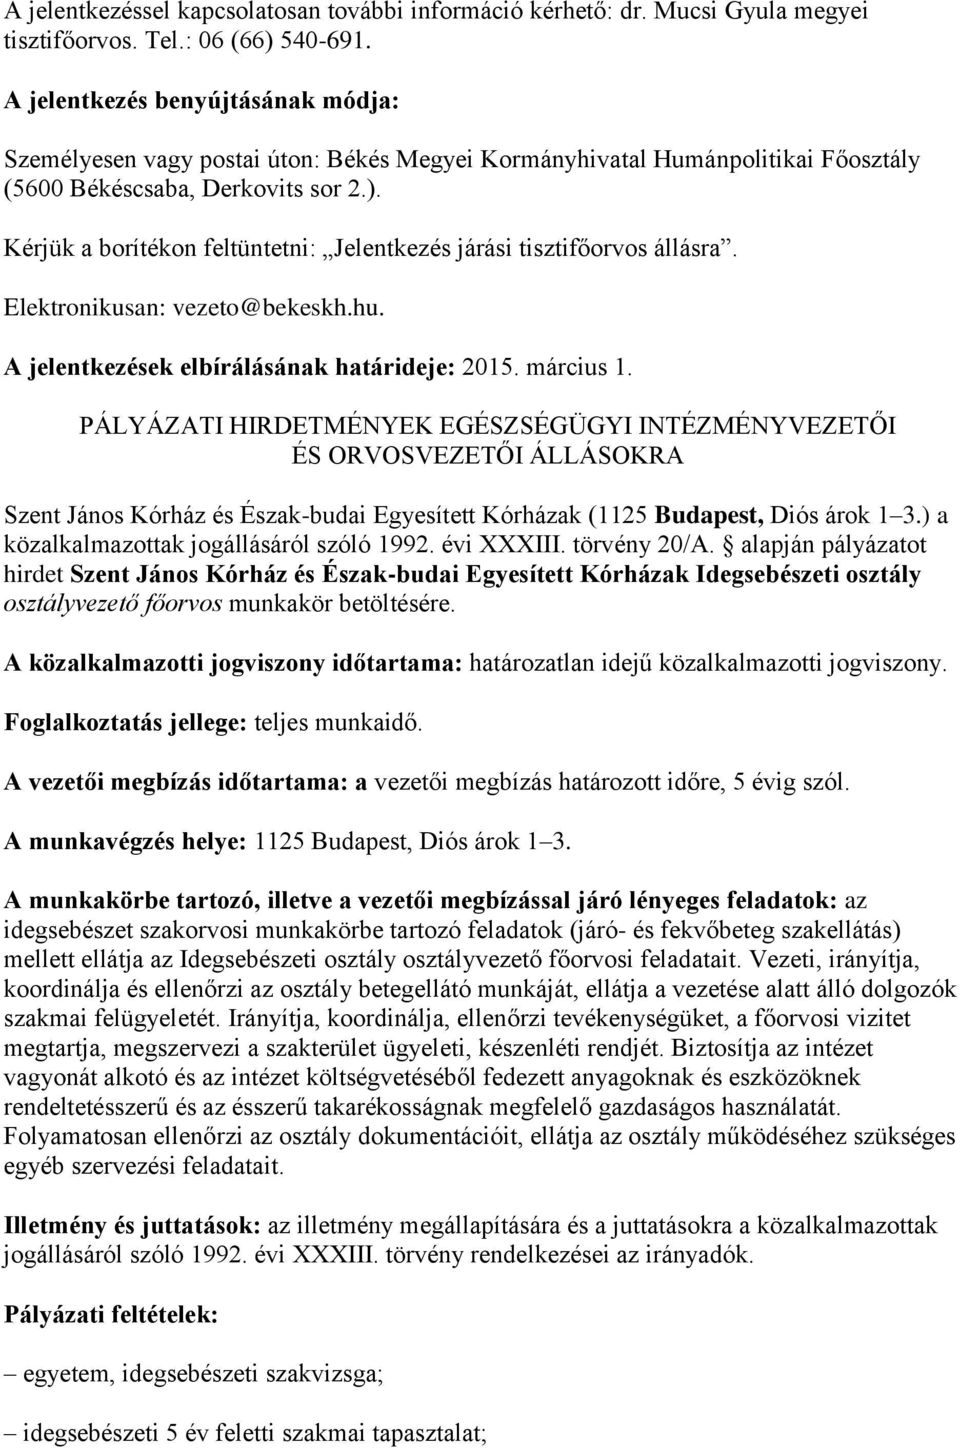 Kérjük a borítékon feltüntetni: Jelentkezés járási tisztifőorvos állásra. Elektronikusan: vezeto@bekeskh.hu. A jelentkezések elbírálásának határideje: 2015. március 1.